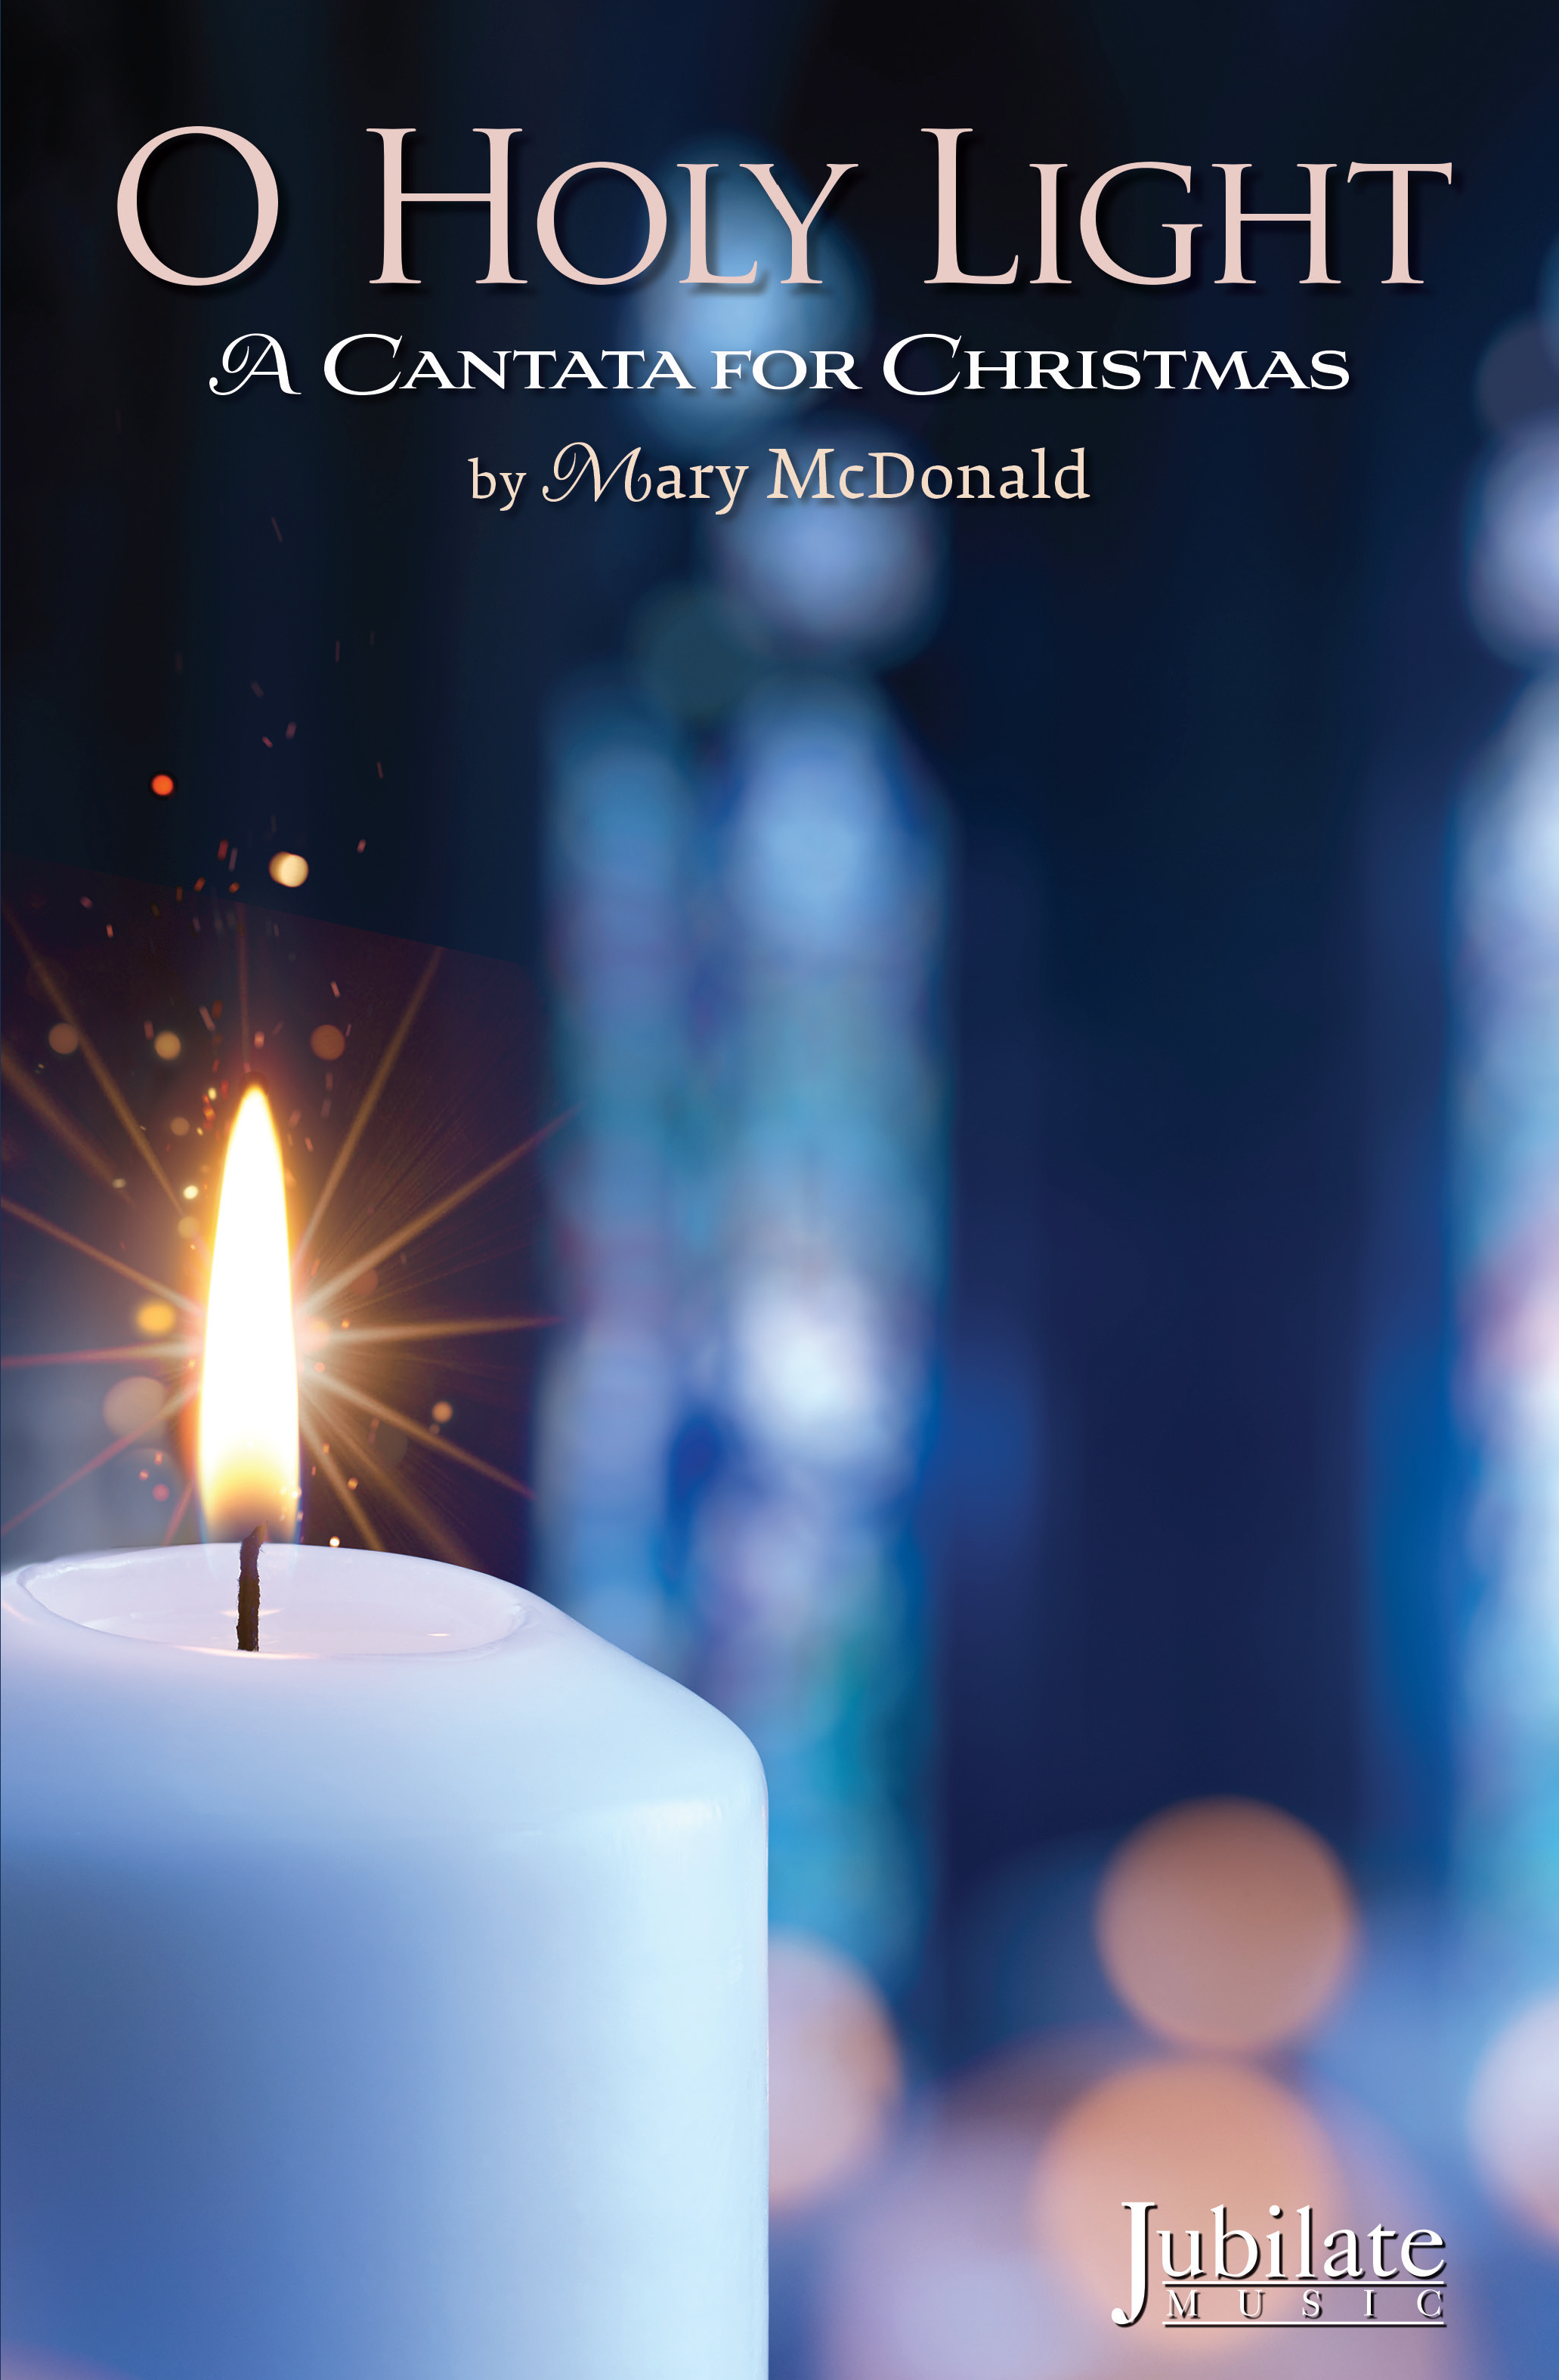 O Holy Night - Christmas Songs of Worship